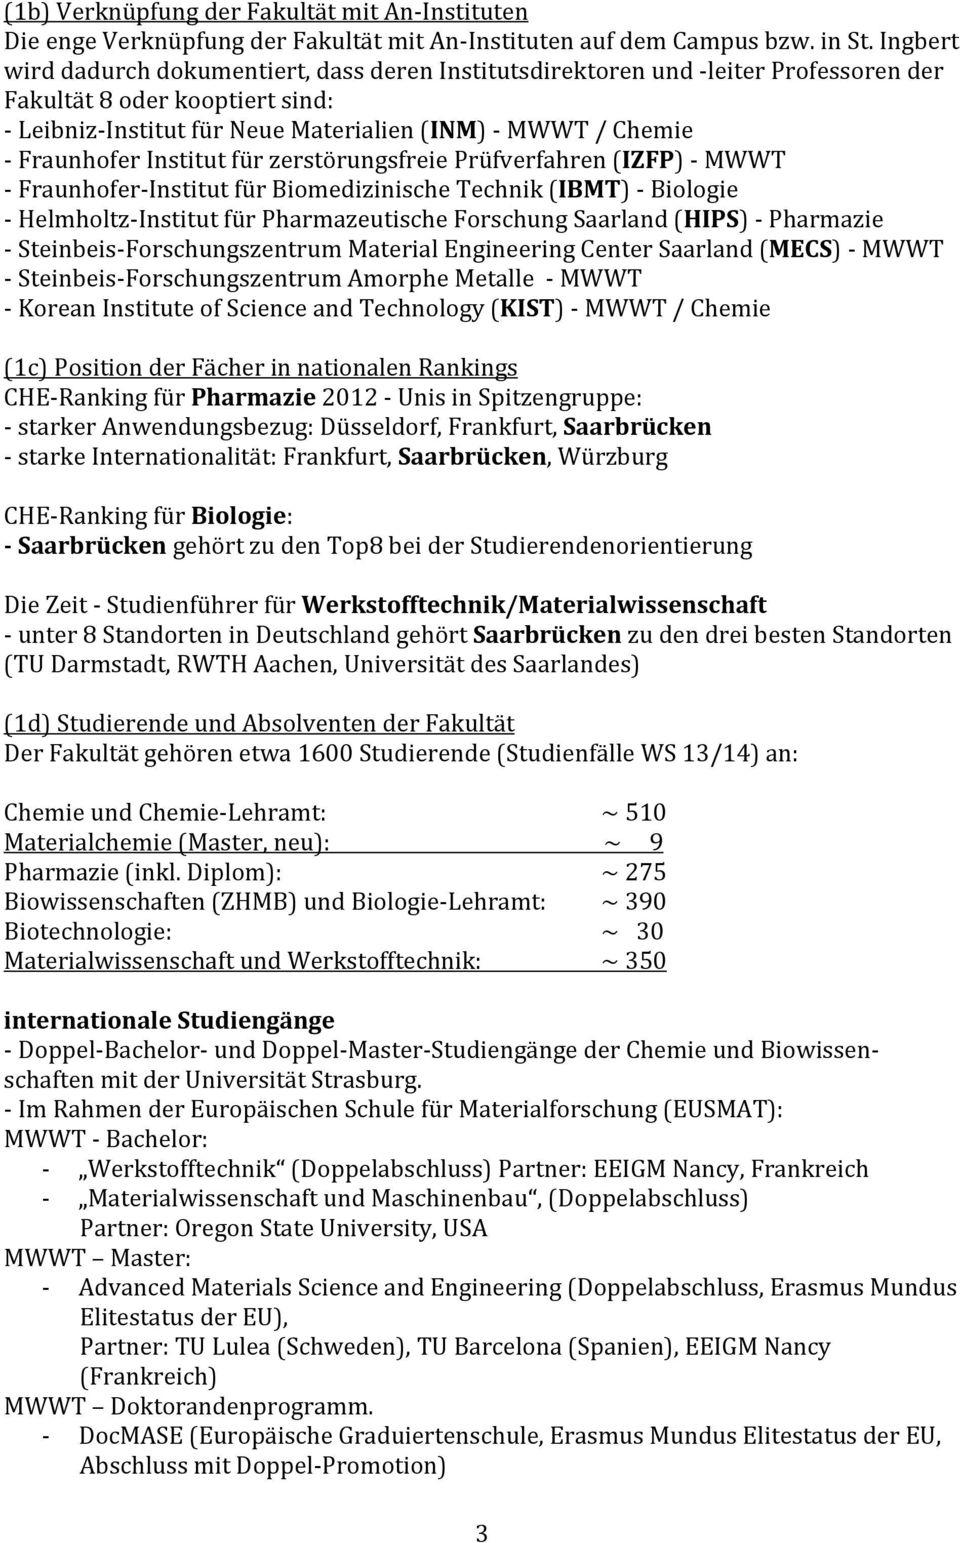 FraunhoferInstitutfürzerstörungsfreiePrüfverfahren(IZFP) MWWT Fraunhofer InstitutfürBiomedizinischeTechnik(IBMT) Biologie Helmholtz InstitutfürPharmazeutischeForschungSaarland(HIPS) Pharmazie